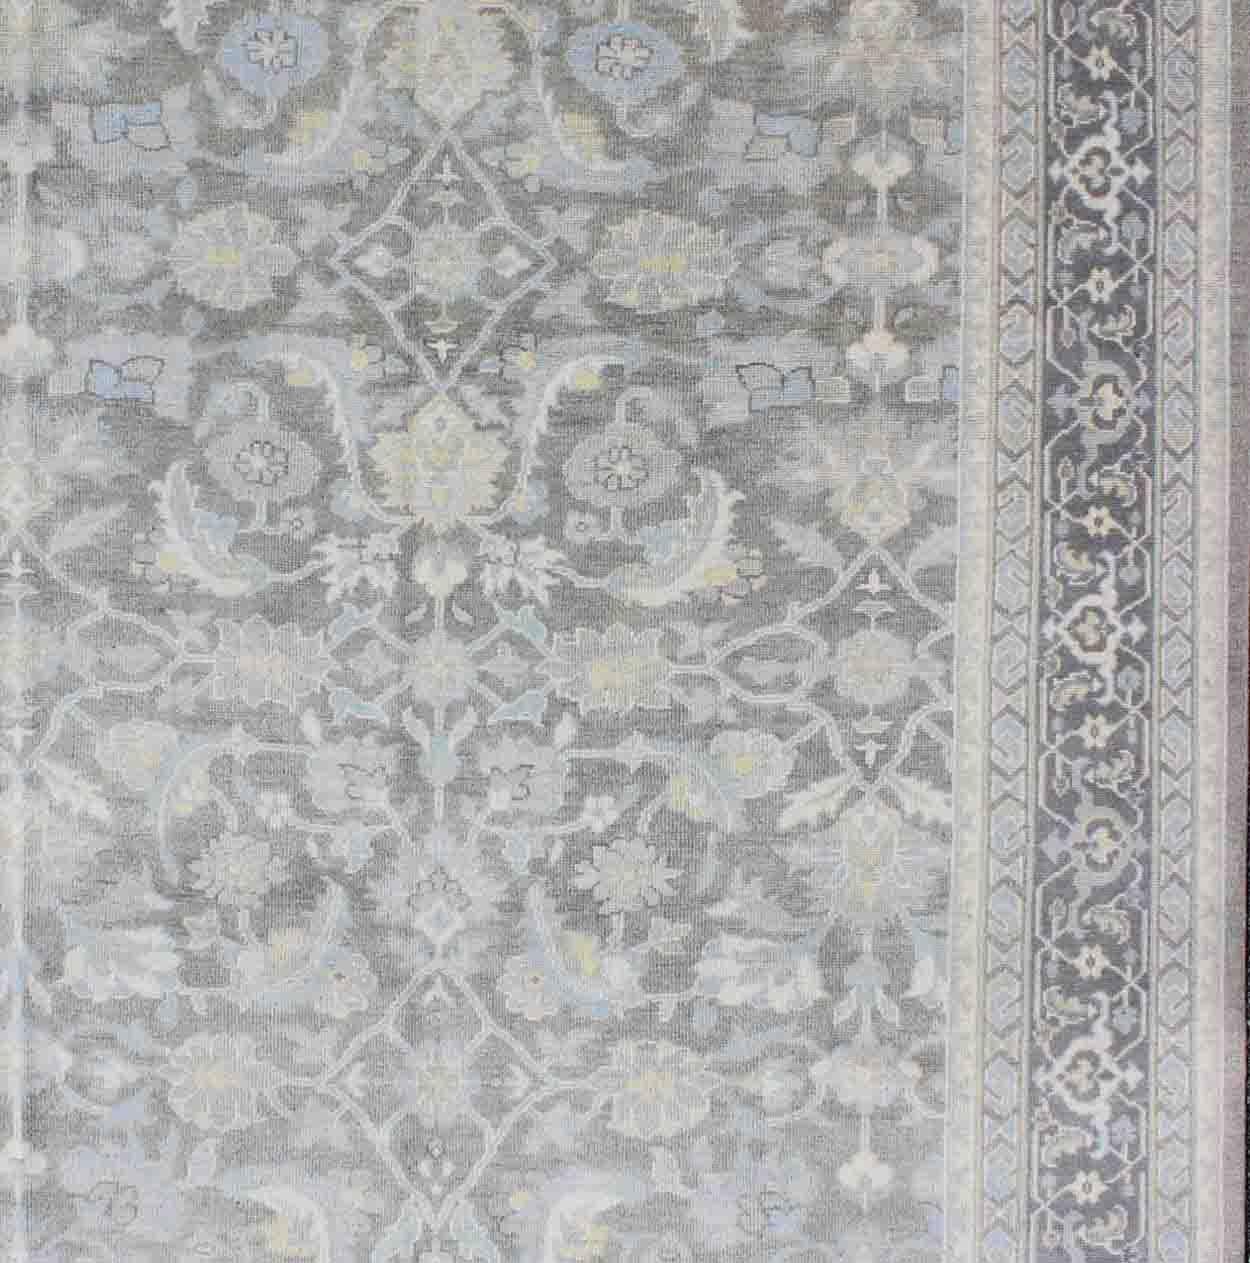 Quadratisch geformter Malayer Designteppich in Grau, Silber, Hellblau und Anthrazit mit geometrischem Allover-Muster, Keivan Woven Arts/ Teppich OB-5921, Herkunftsland/Typ: Indien/ Malayer.

Maße: 7' x 9'.

Dieser handgeknüpfte Teppich im